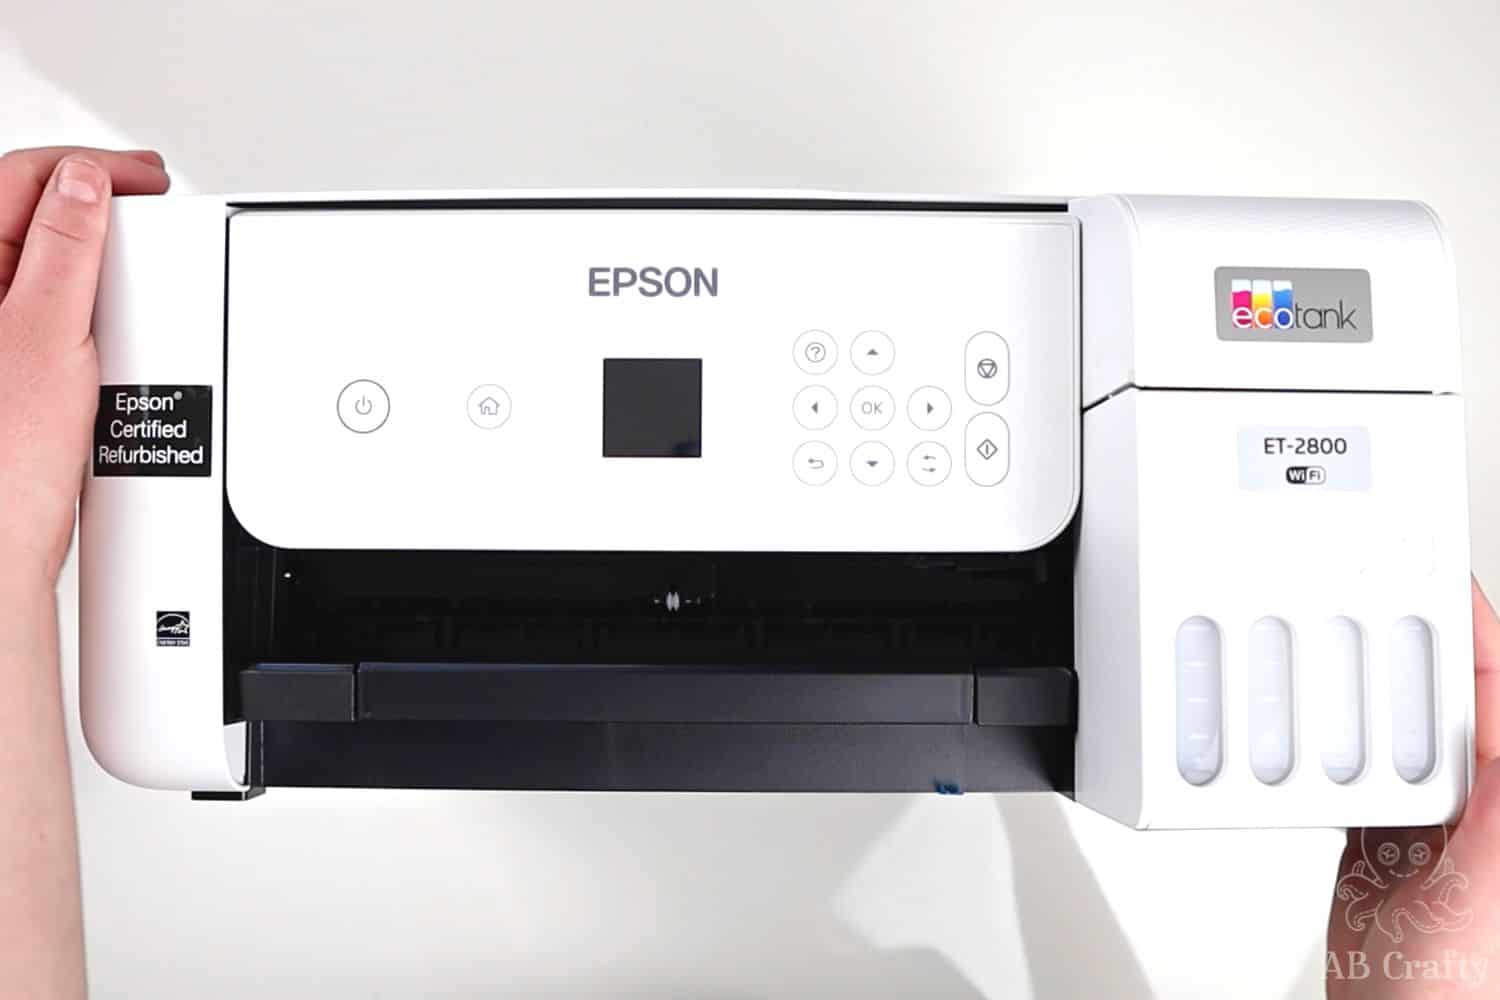 Aburrido Huelga escotilla Easily Make an Epson Ecotank Sublimation Printer - AB Crafty